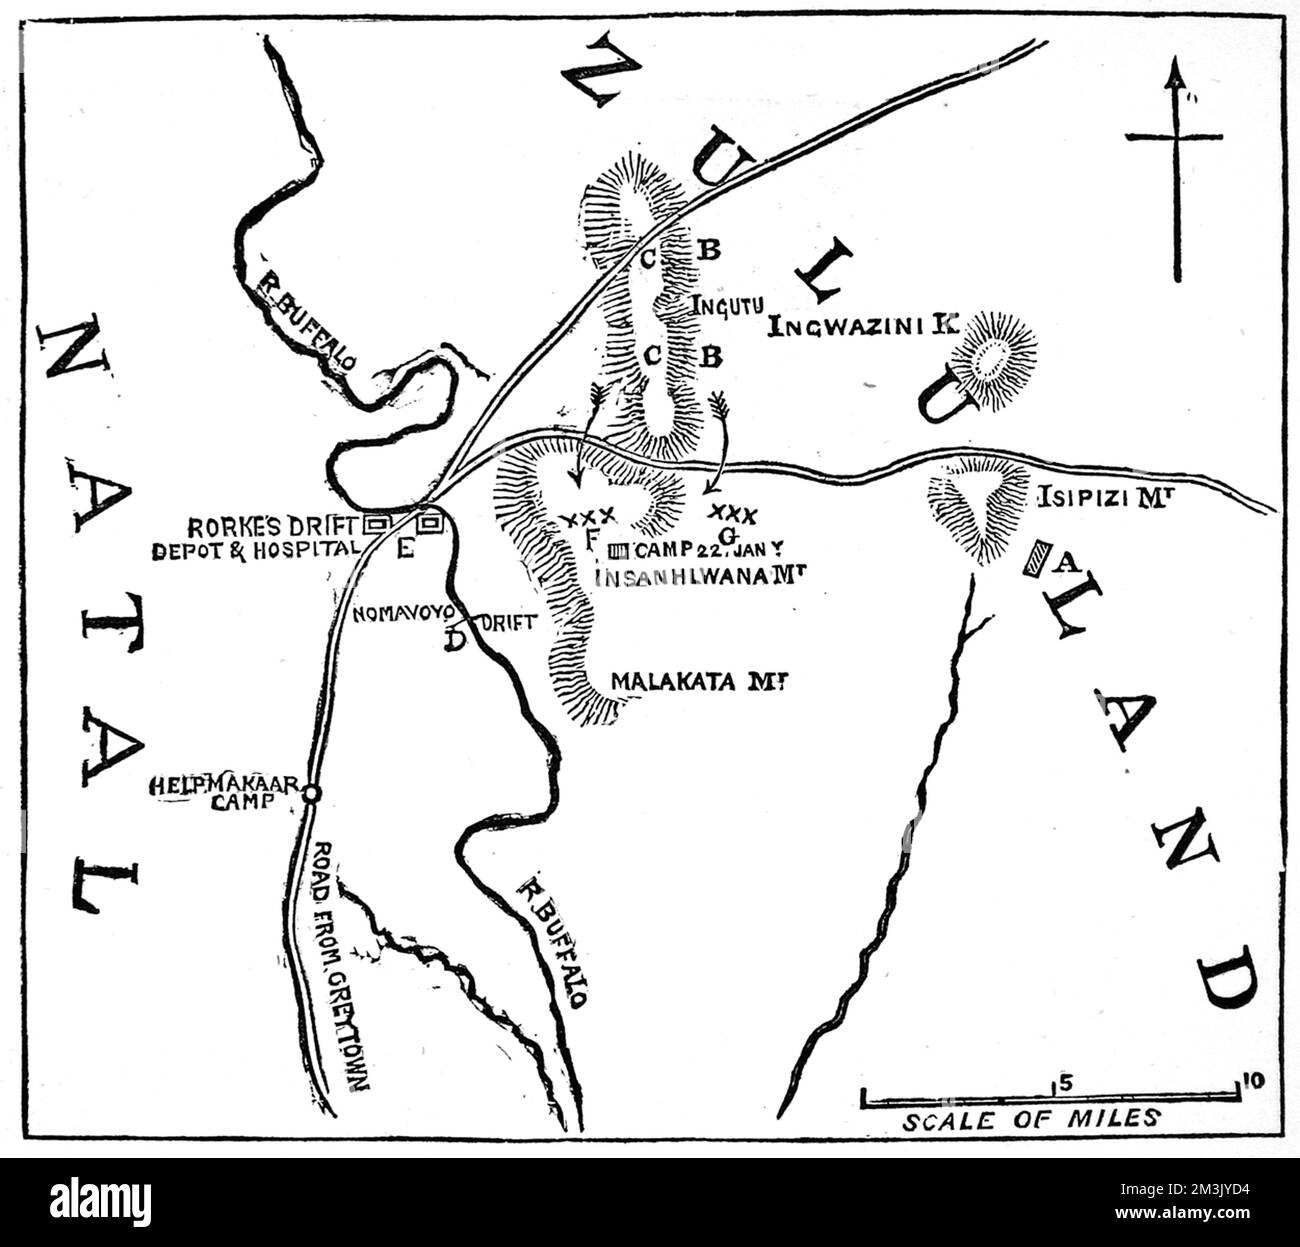 Skizze, die die Grenze zwischen Zululand und Natal zeigt, wo die Schlacht von Isandlwana stattfand. Datum: 1879 Stockfoto